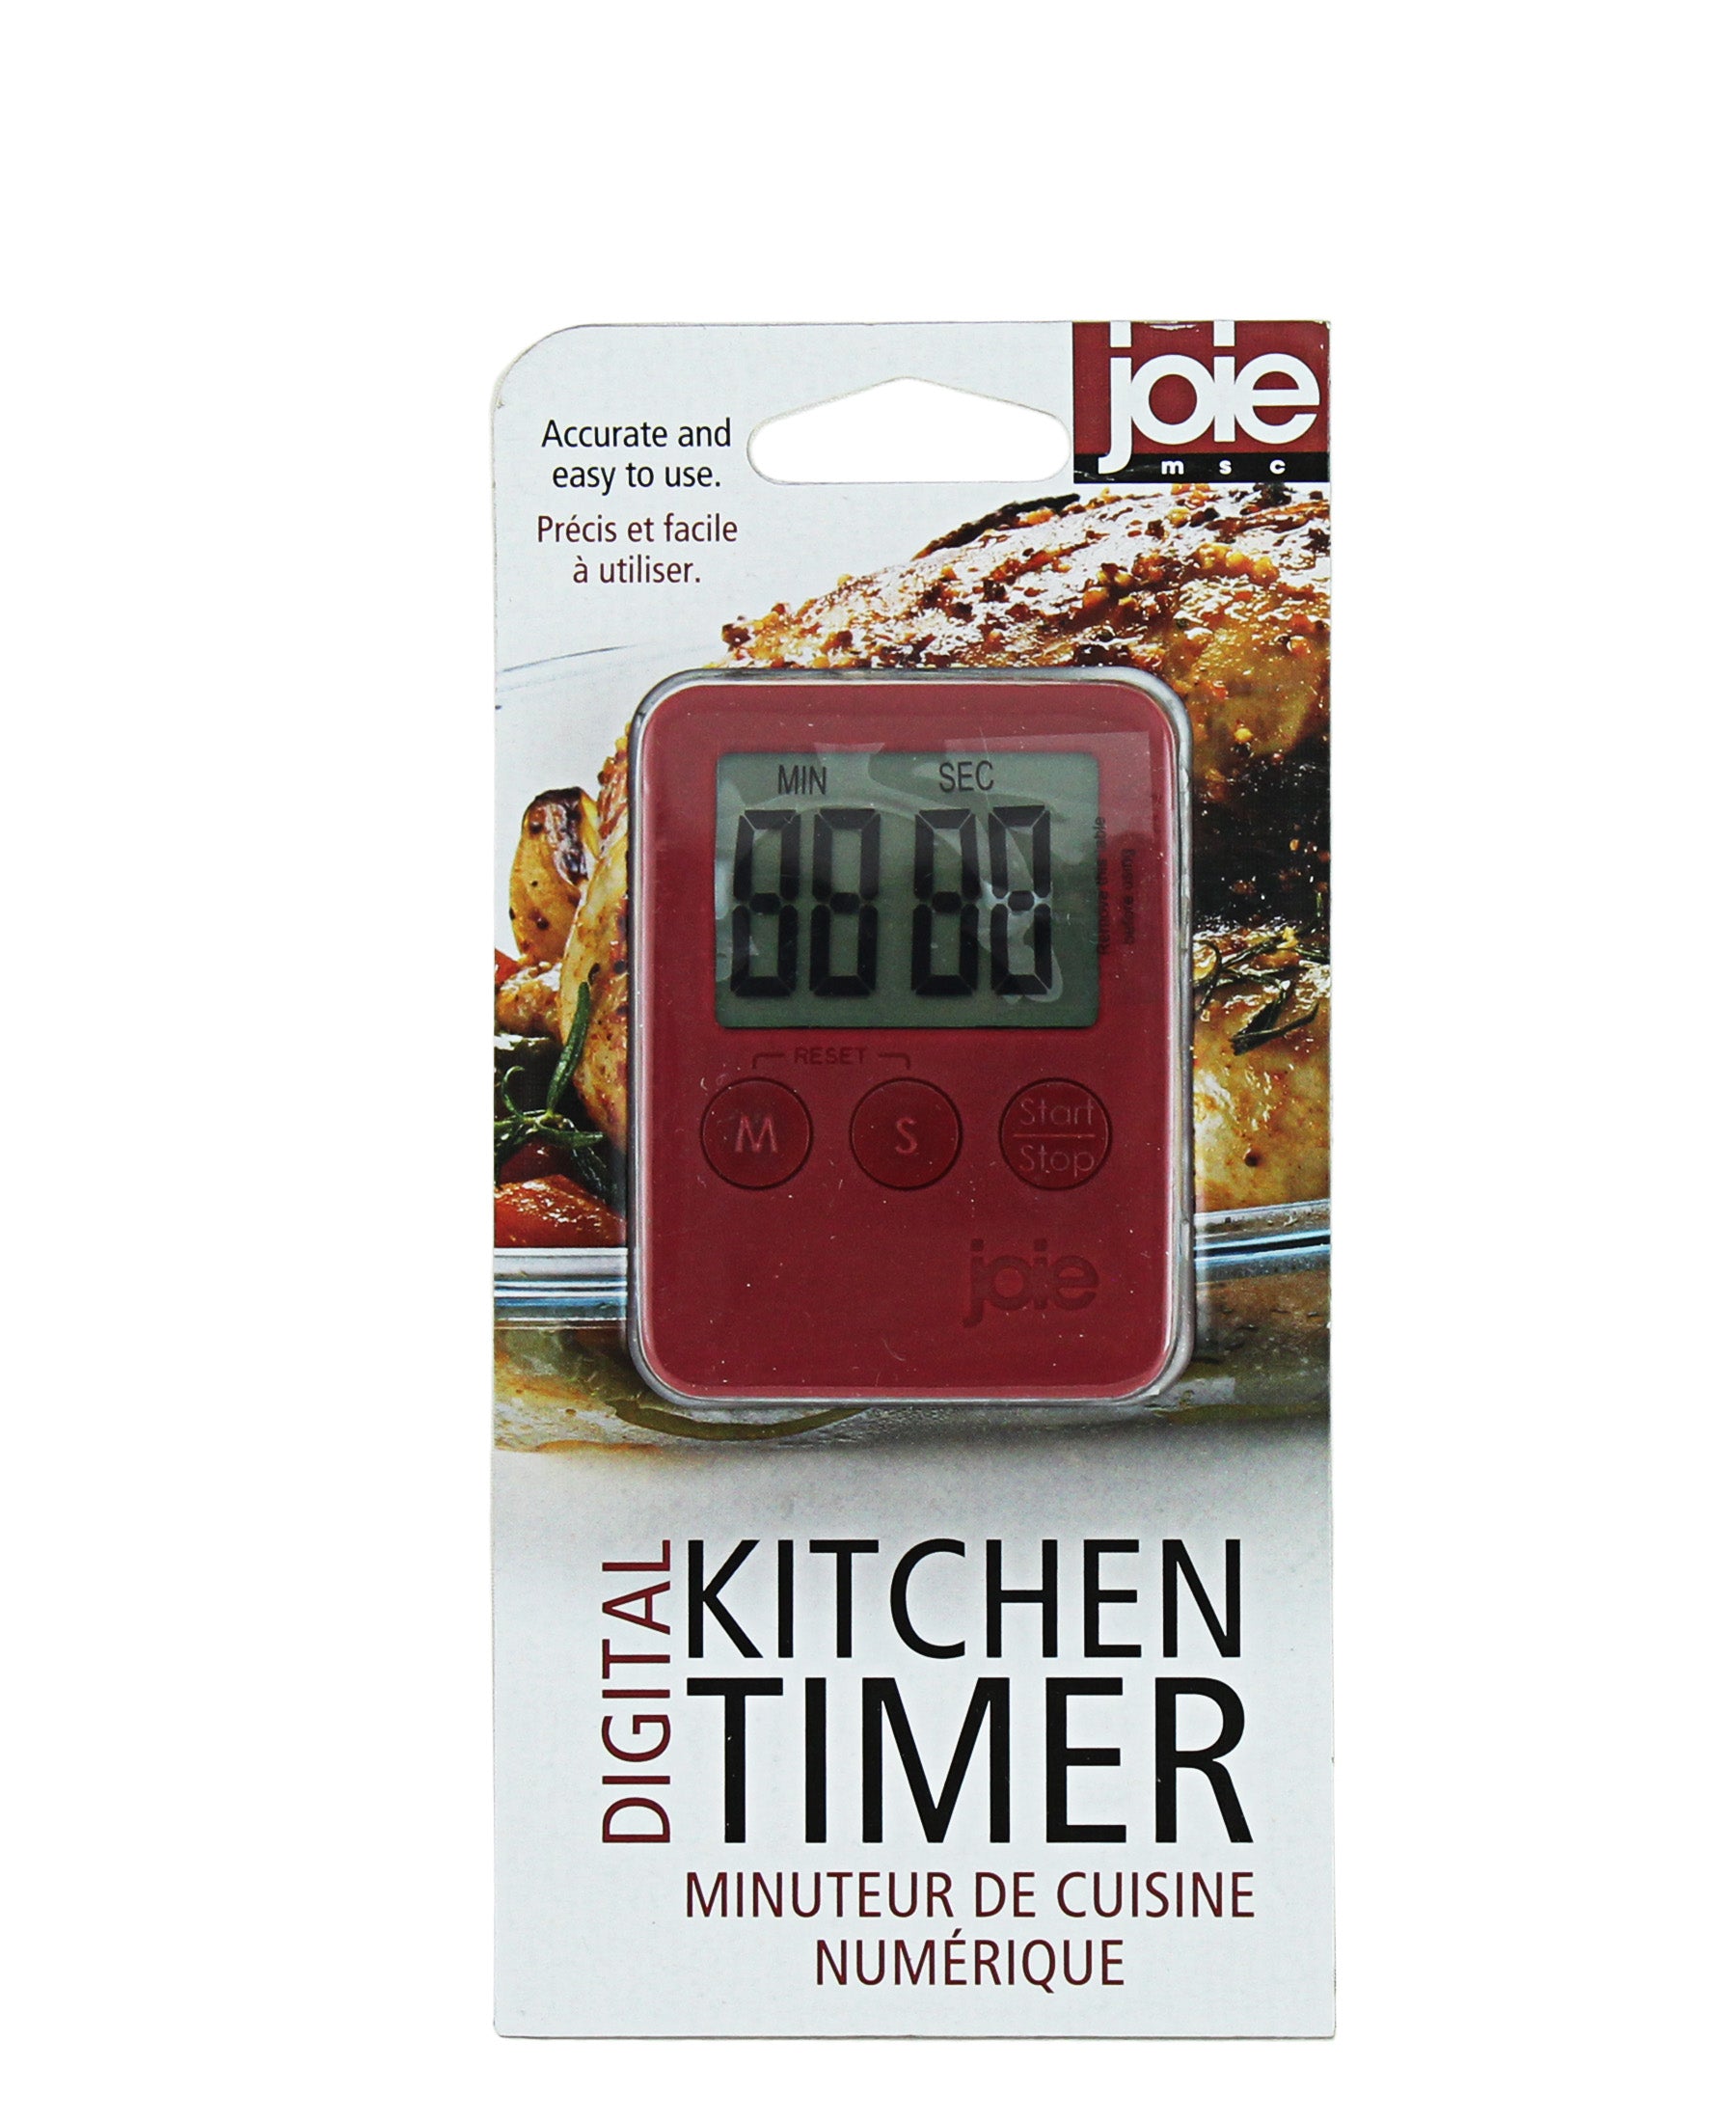 Joie Msc Digital Kitchen Timer - Red